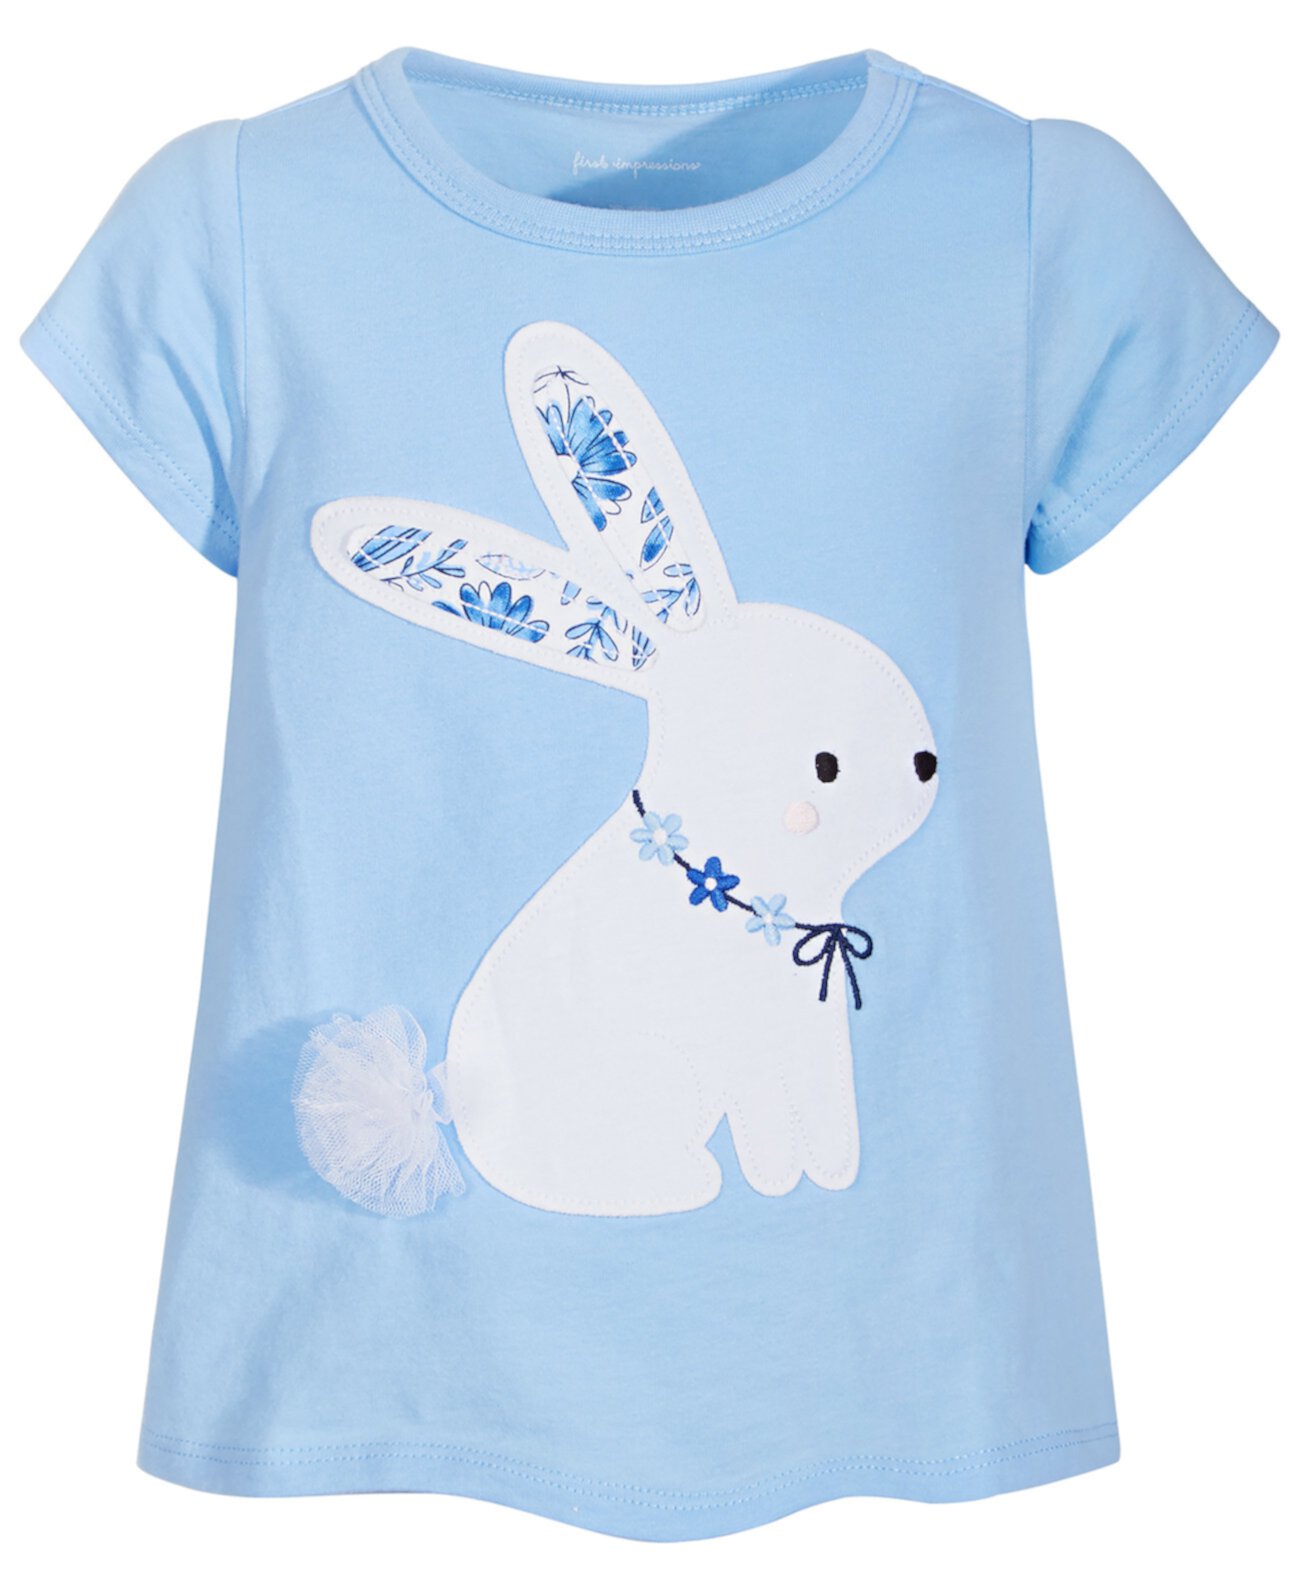 Хлопковая футболка с кроликом для маленьких девочек, созданная для Macy's First Impressions